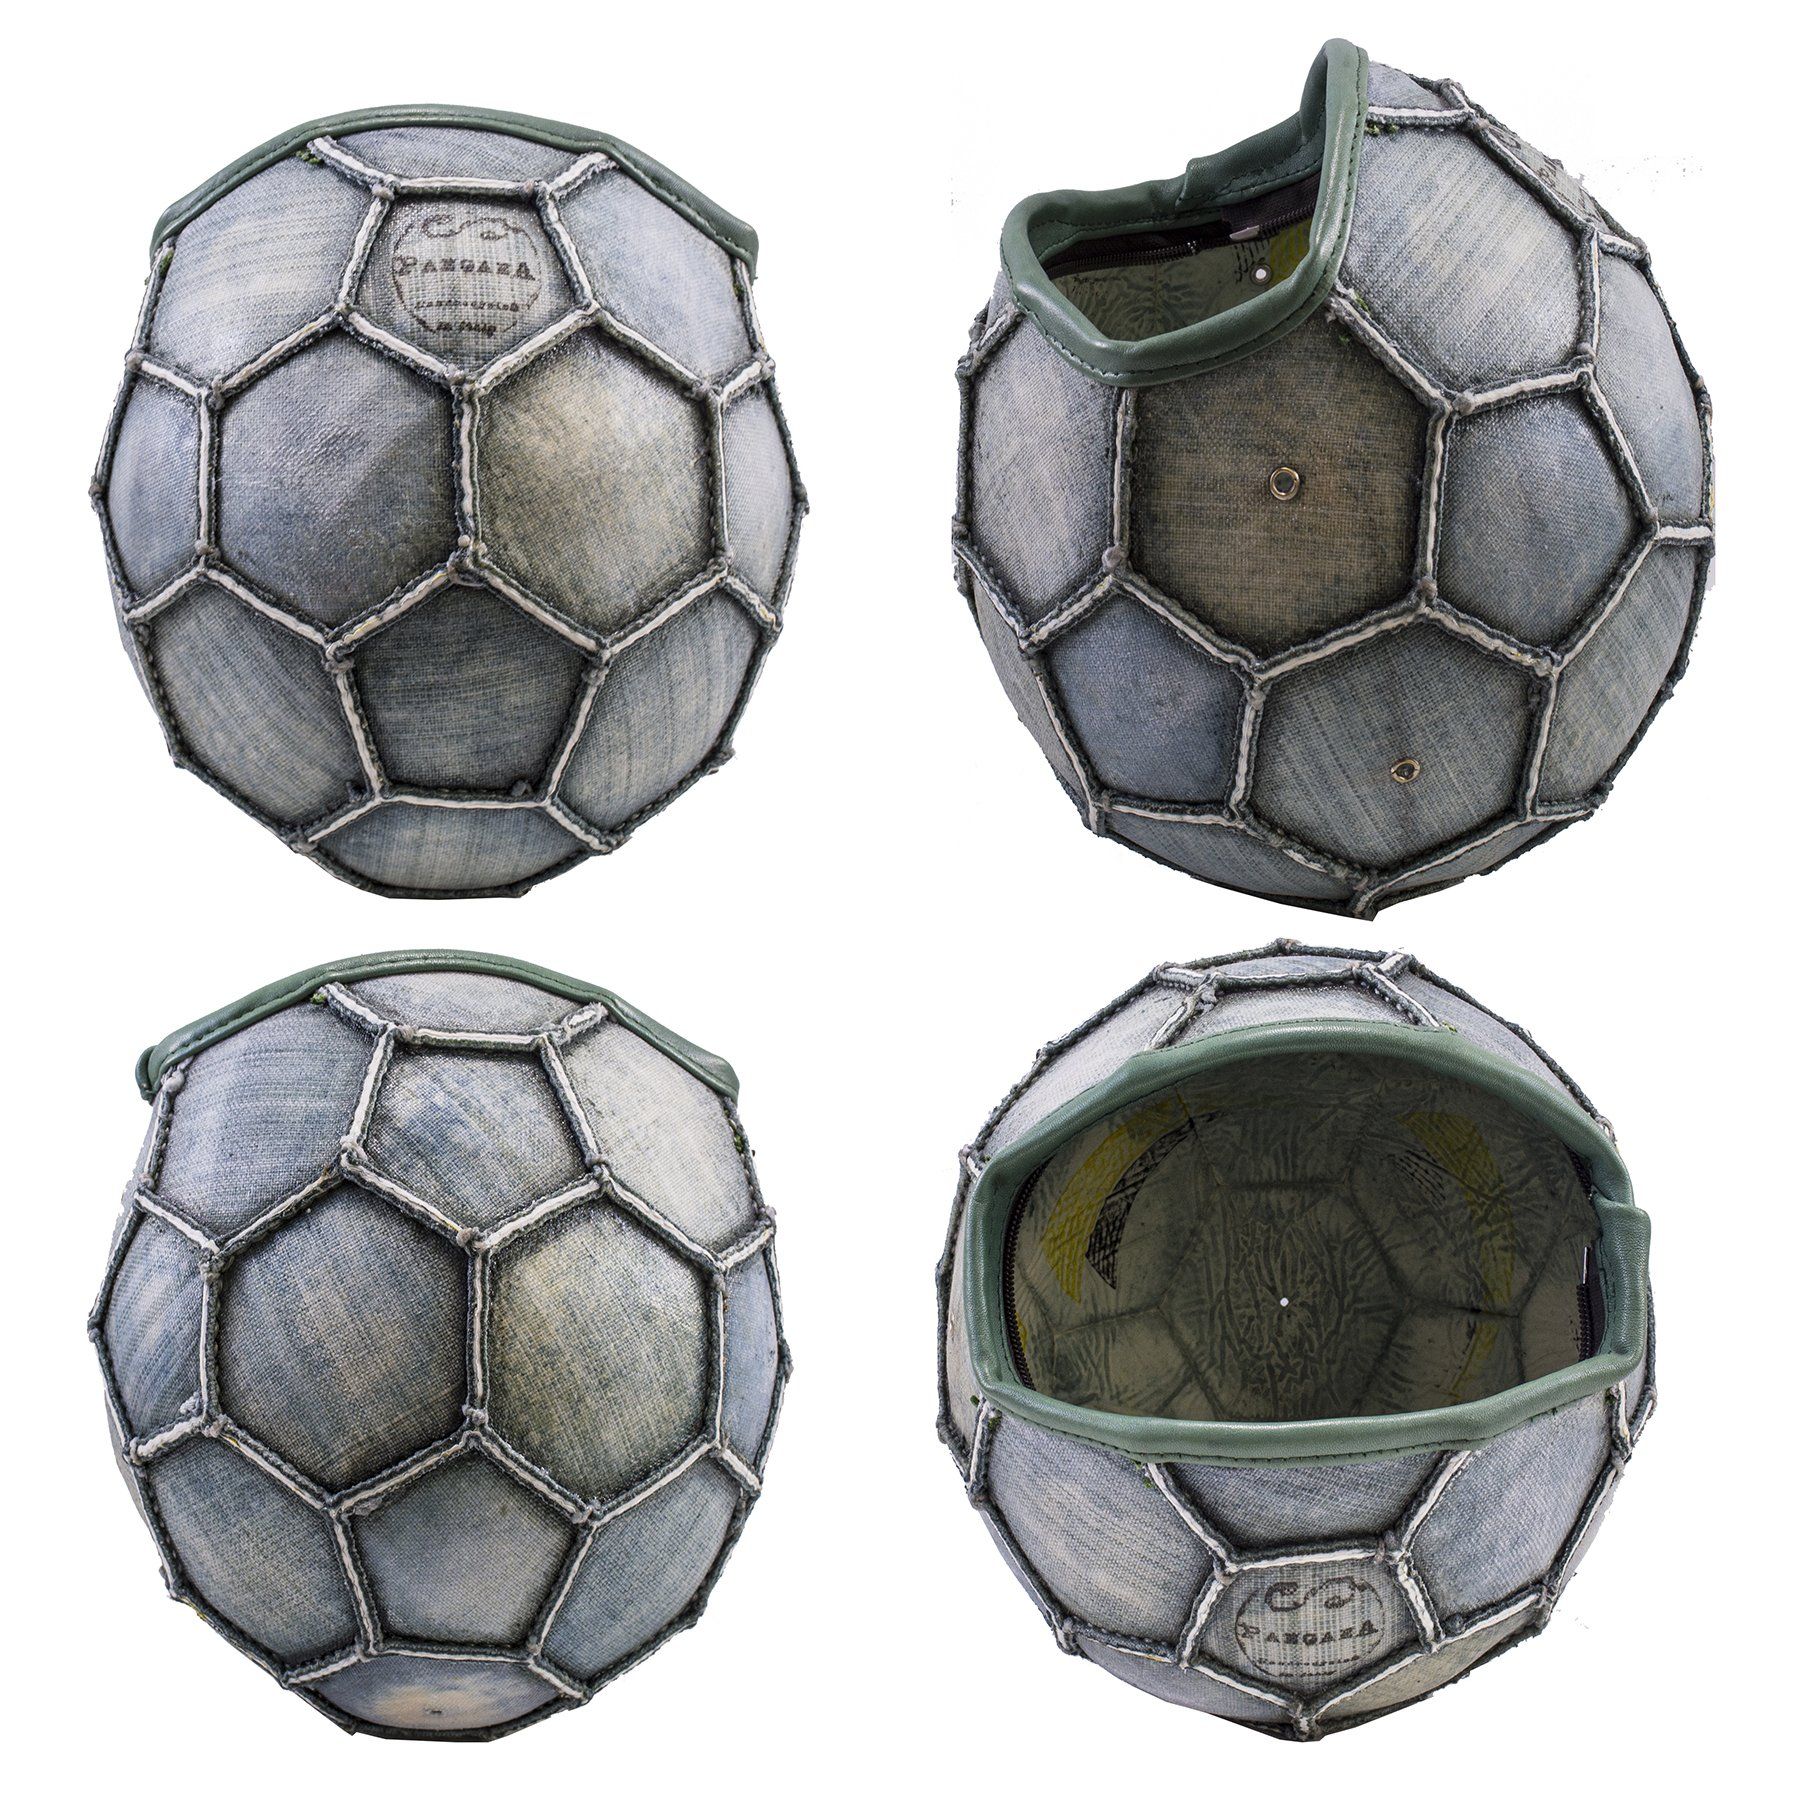 pangaea guscio borsa riciclo del pallone da calcio verde componibile personalizzabile